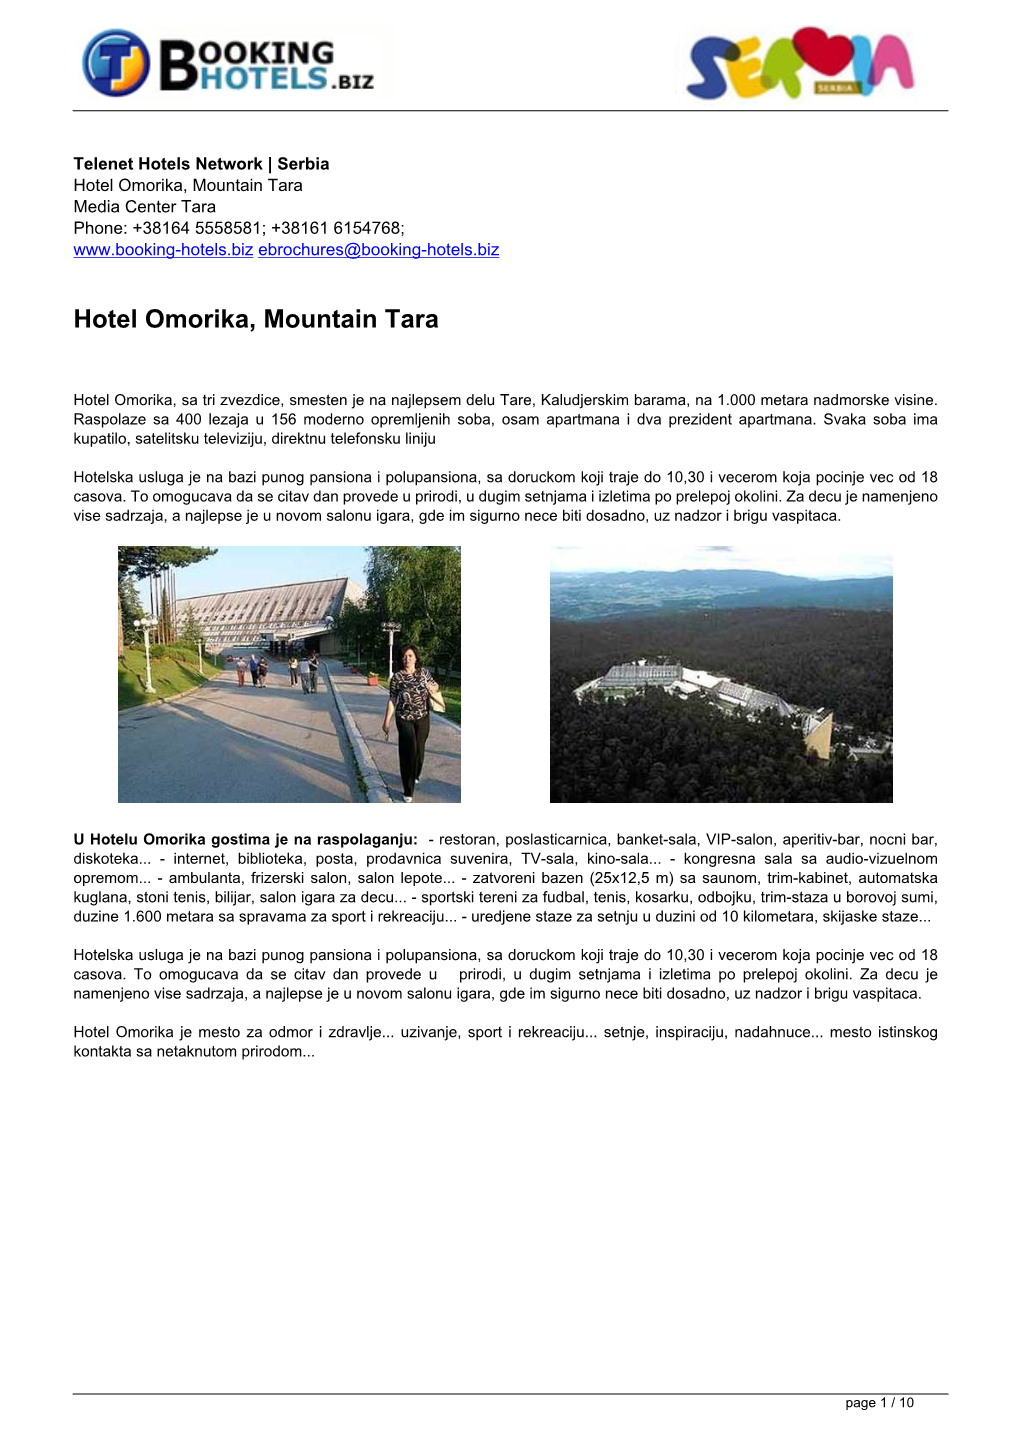 Hotel Omorika, Mountain Tara Media Center Tara Phone: +38164 5558581; +38161 6154768; Ebrochures@Booking-Hotels.Biz